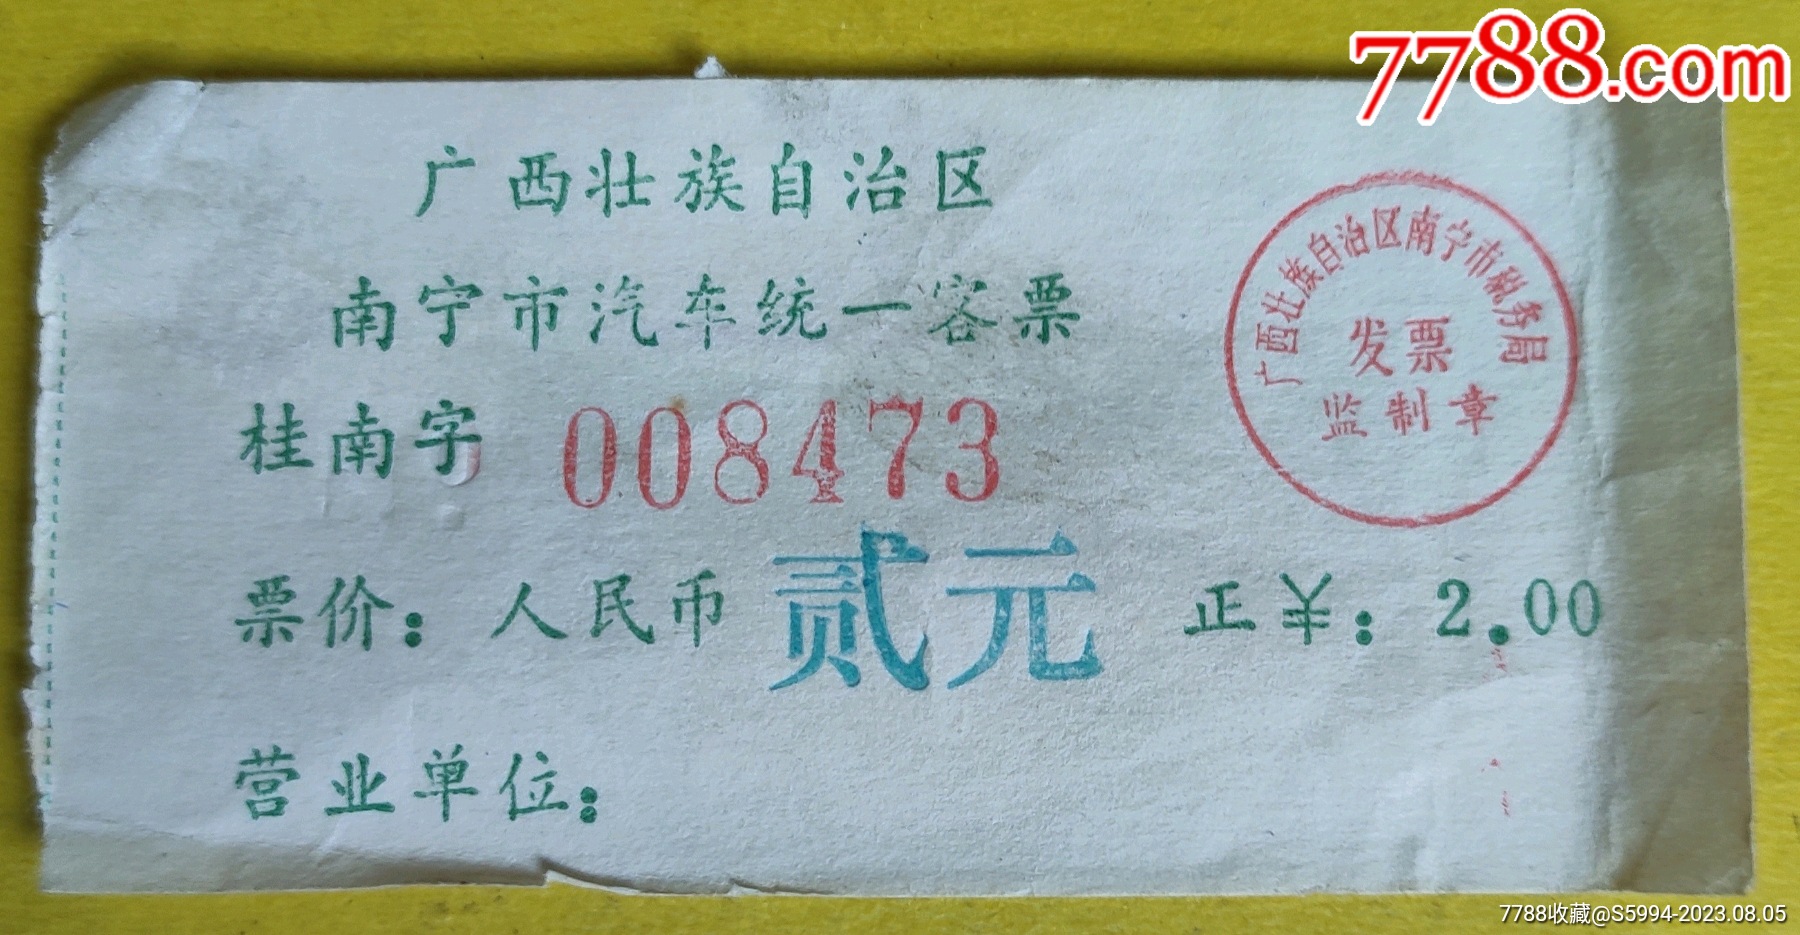 邢台123：收藏的80年代的一张公共汽车票，票价是1元